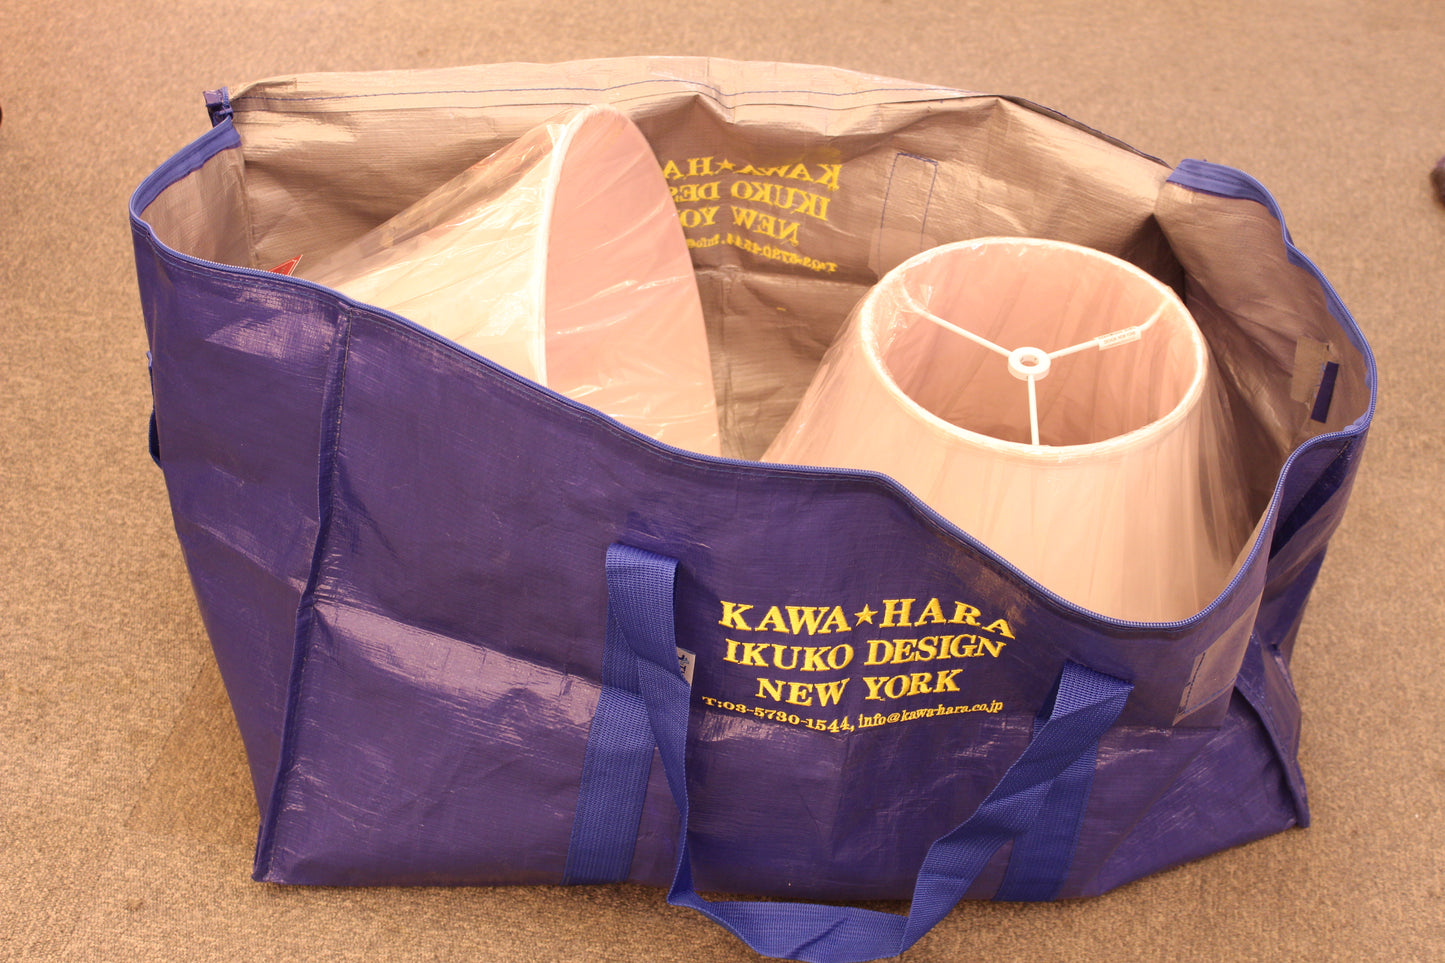 KAWAHARA original blue bag